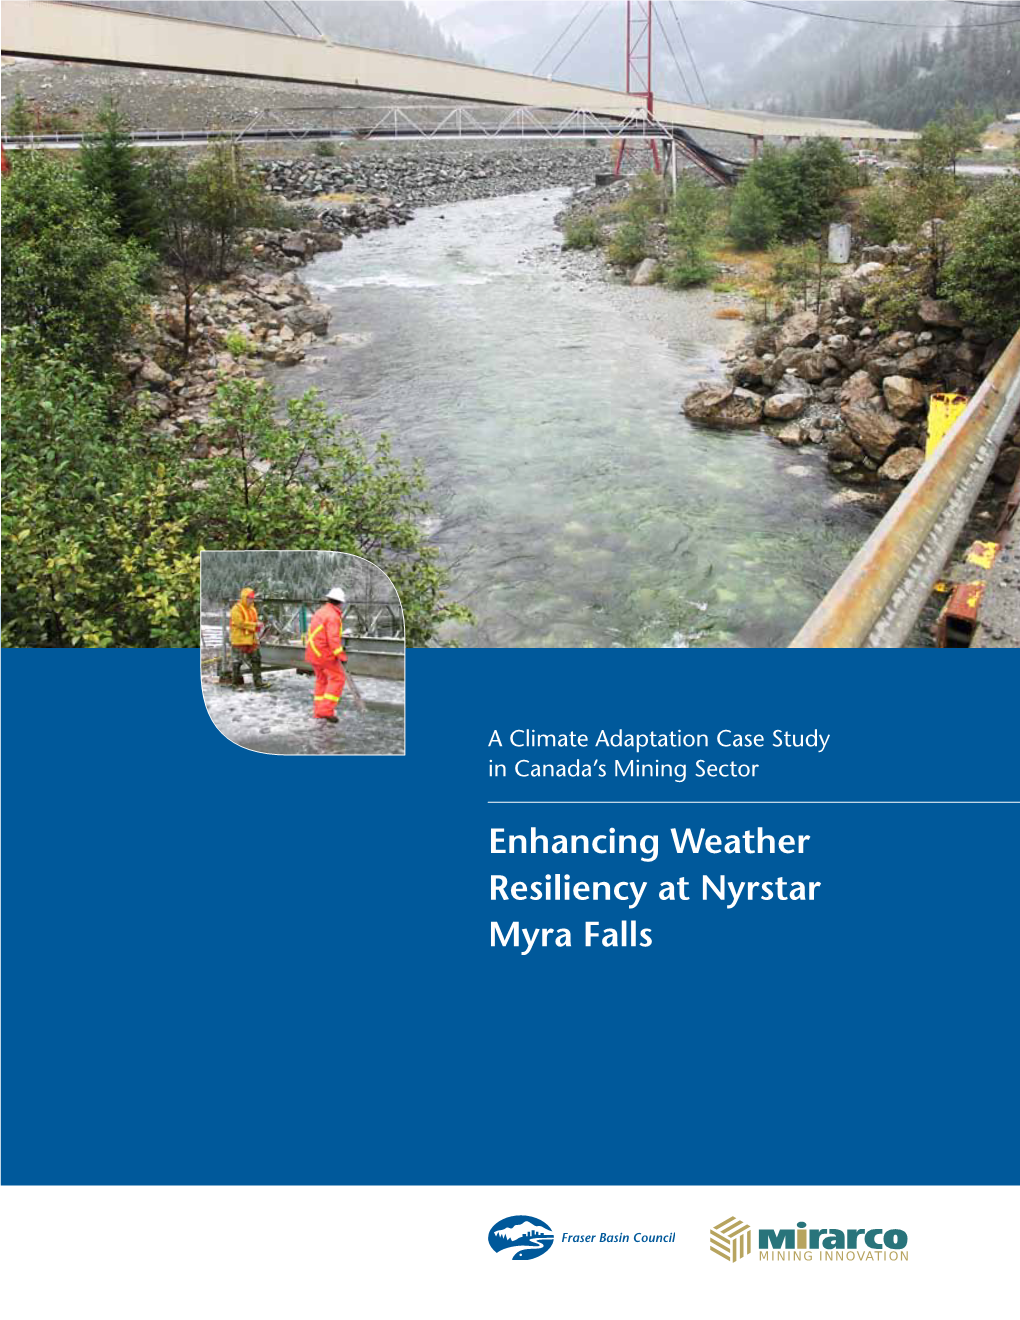 Enhancing Weather Resiliency at Nyrstar, Myra Falls: a Mining